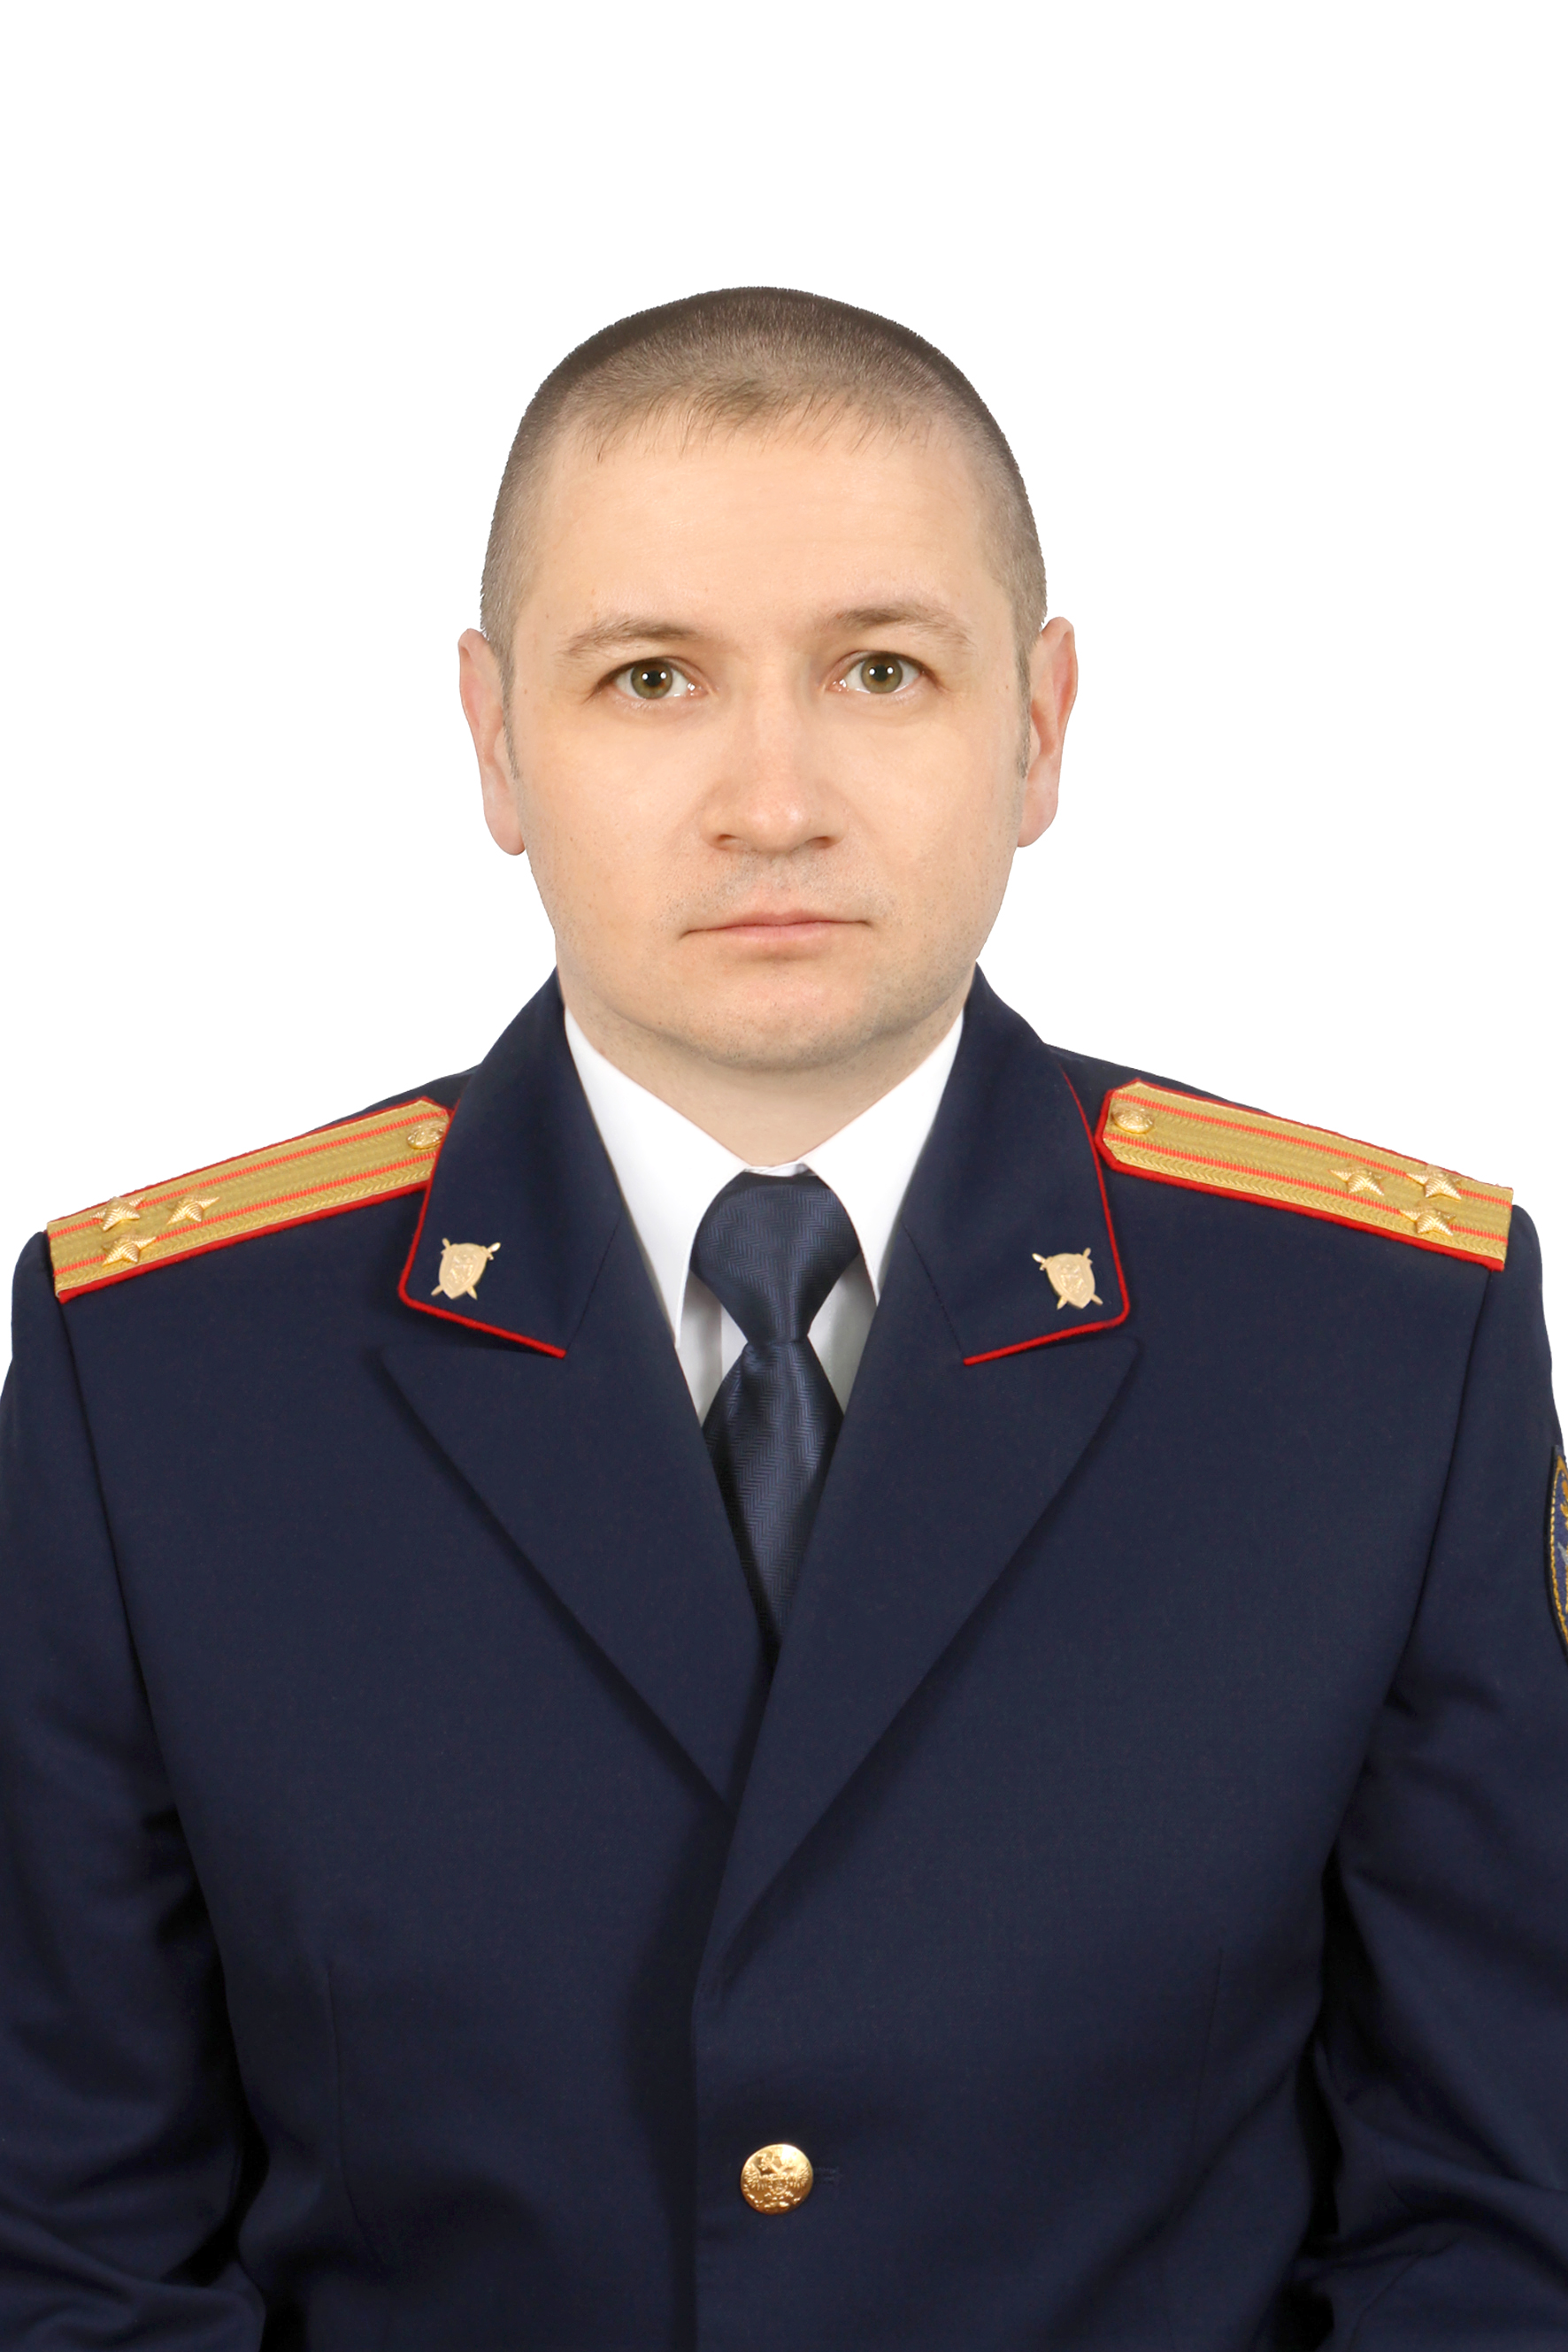             Петрянин Алексей Владимирович
    